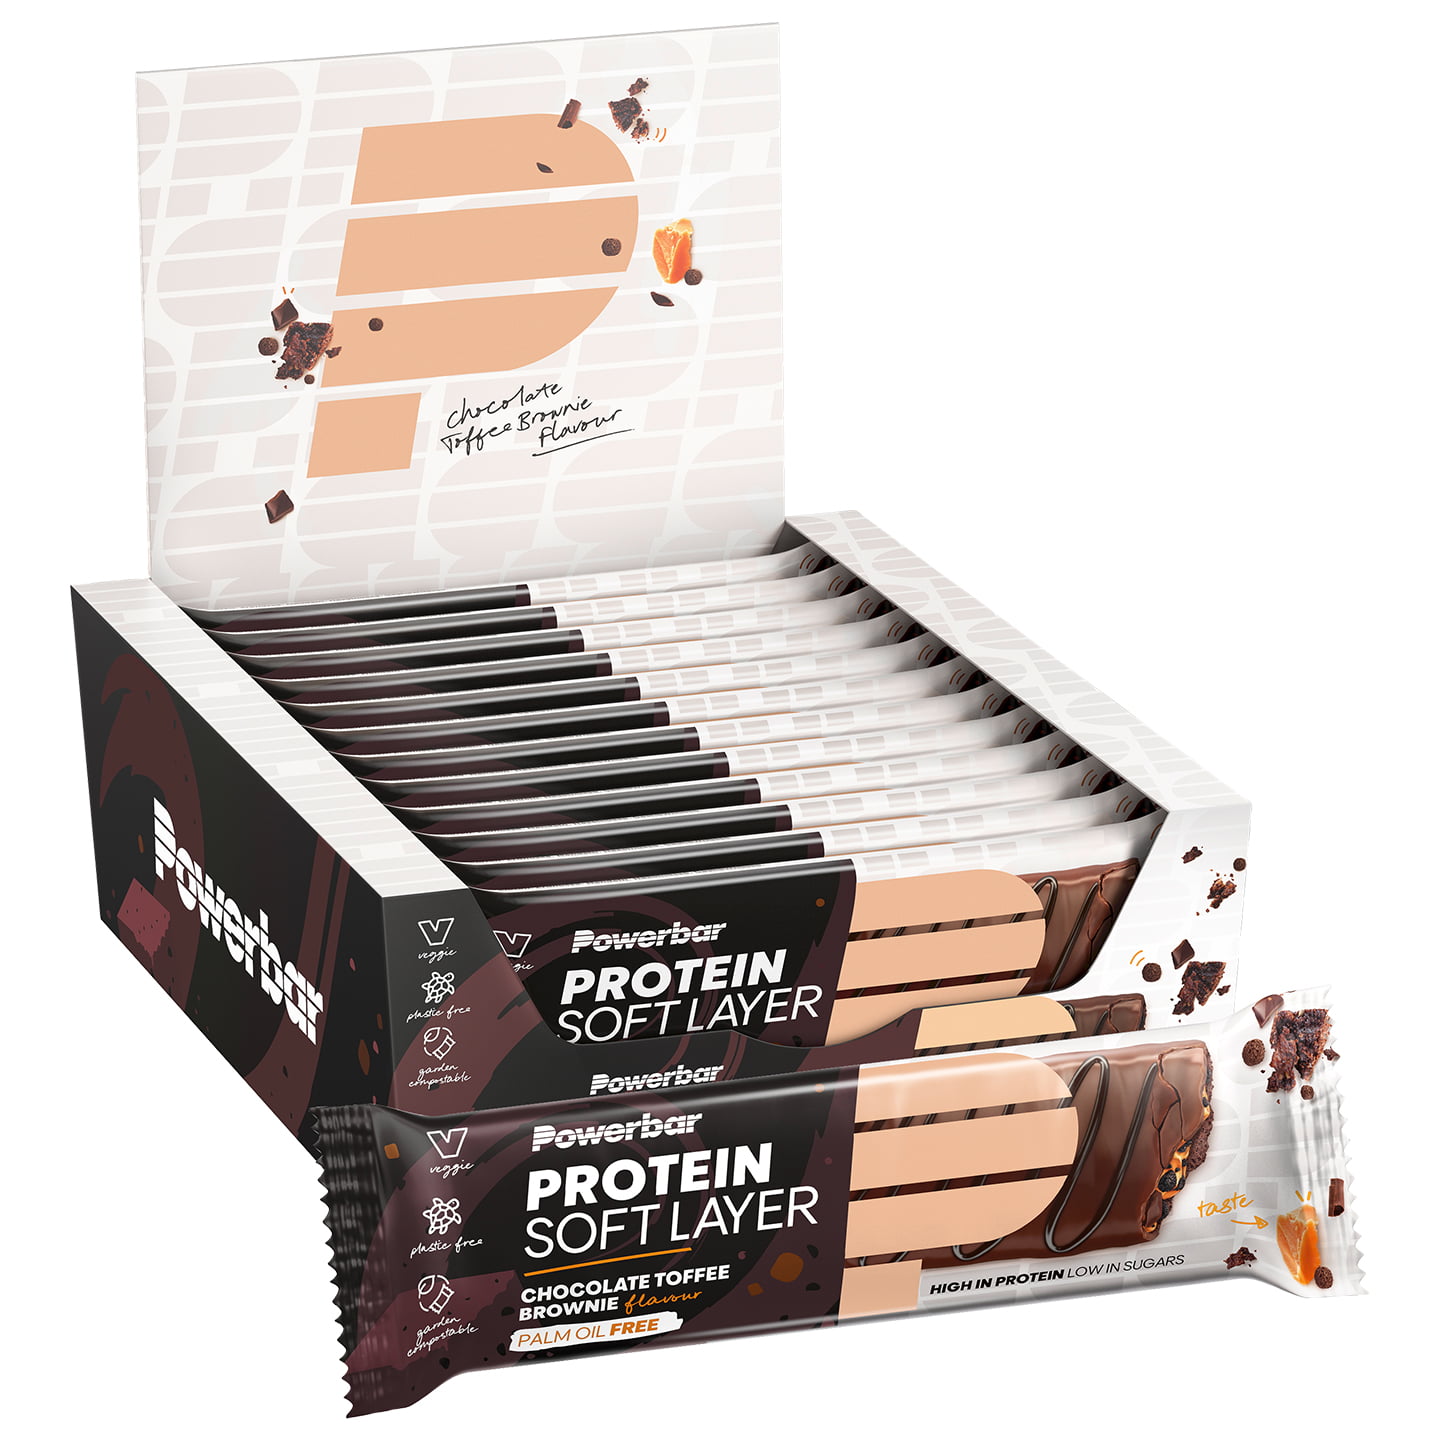 Powerbar Protein Soft Layer (12 x 55G)